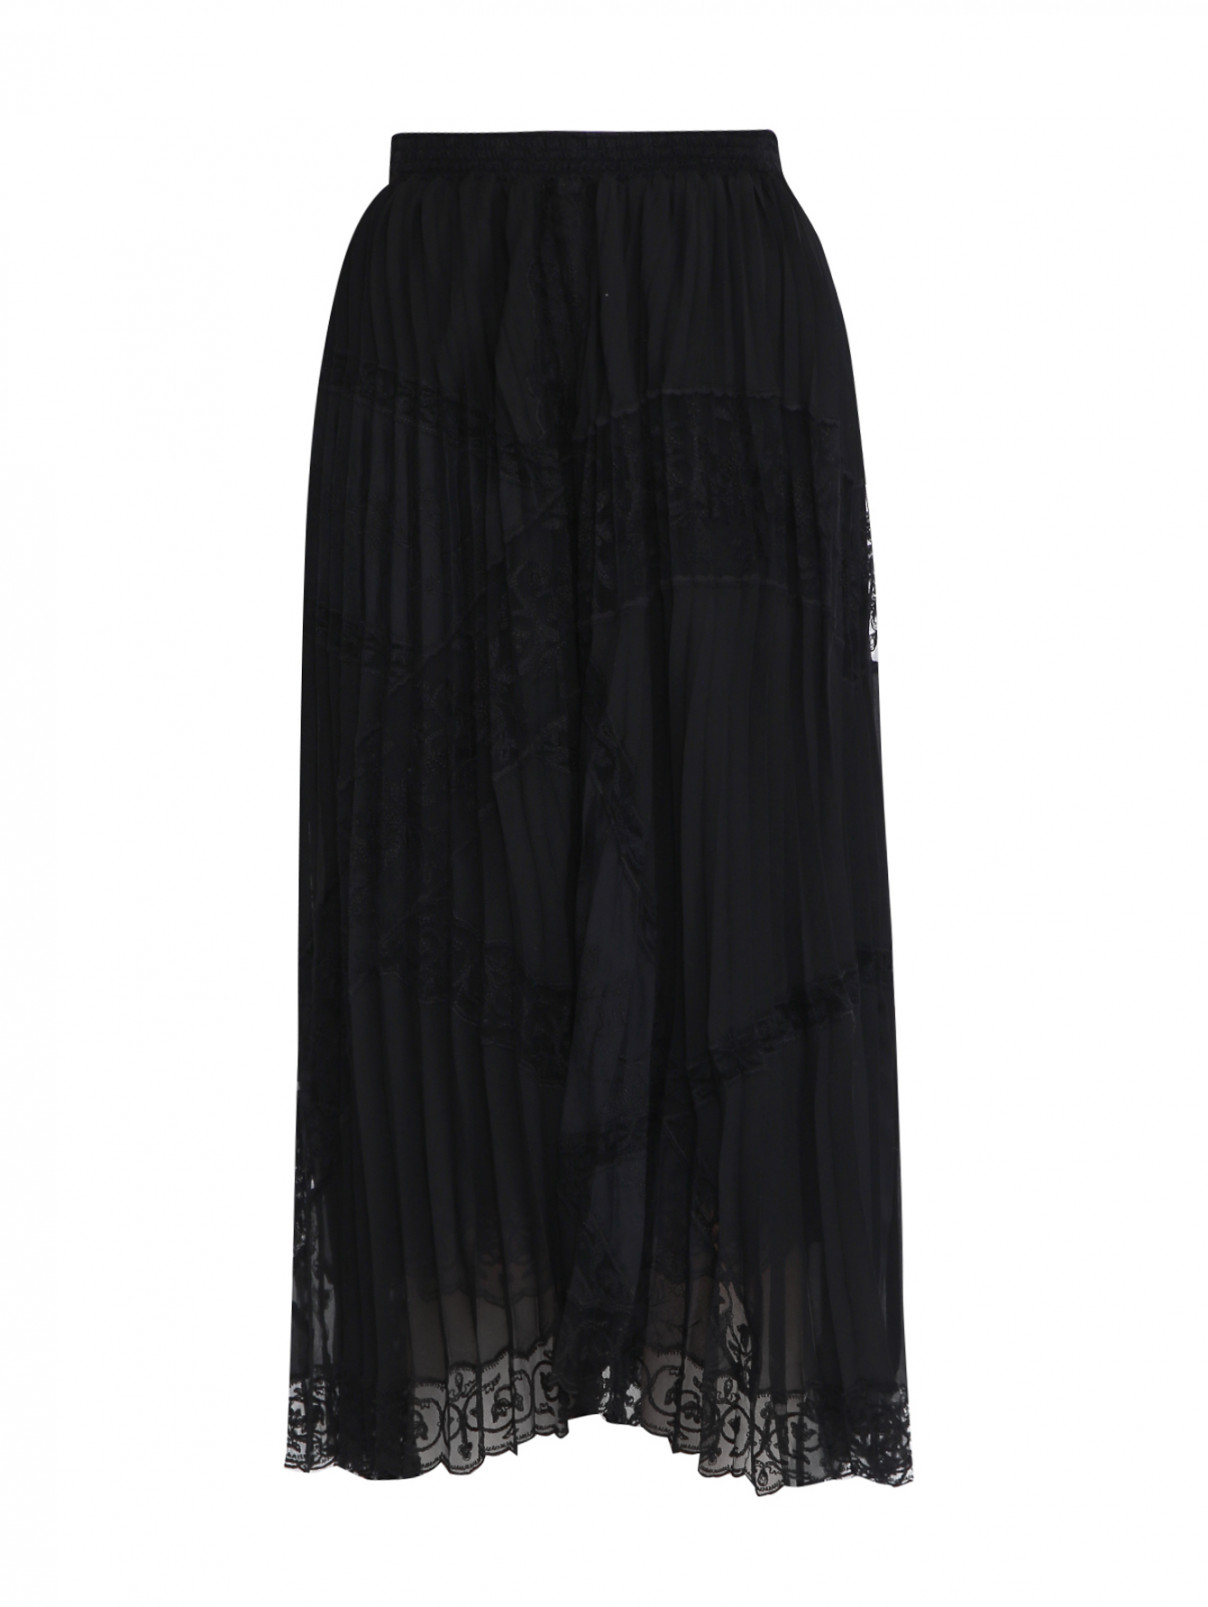 Плиссированная юбка на резинке с вышивкой Ermanno Scervino  –  Общий вид  – Цвет:  Черный